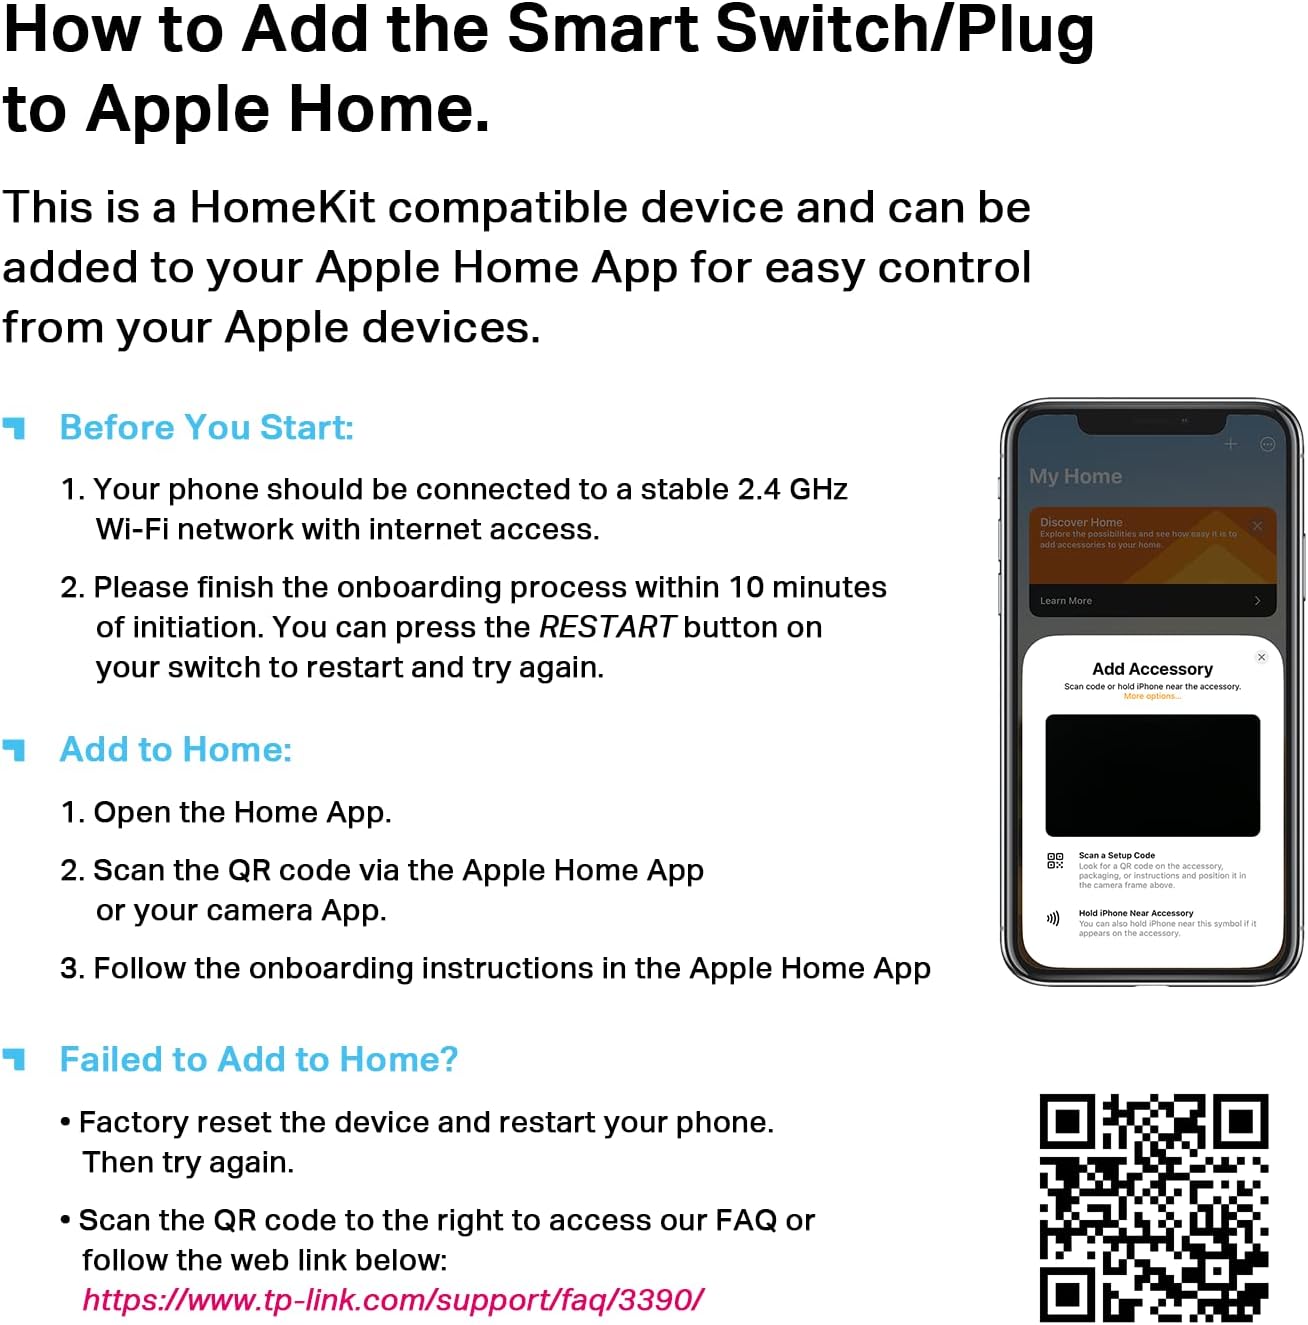 Kasa Smart Plug Mini 15A, Smart Home Wi-Fi Outlet Works with Alexa